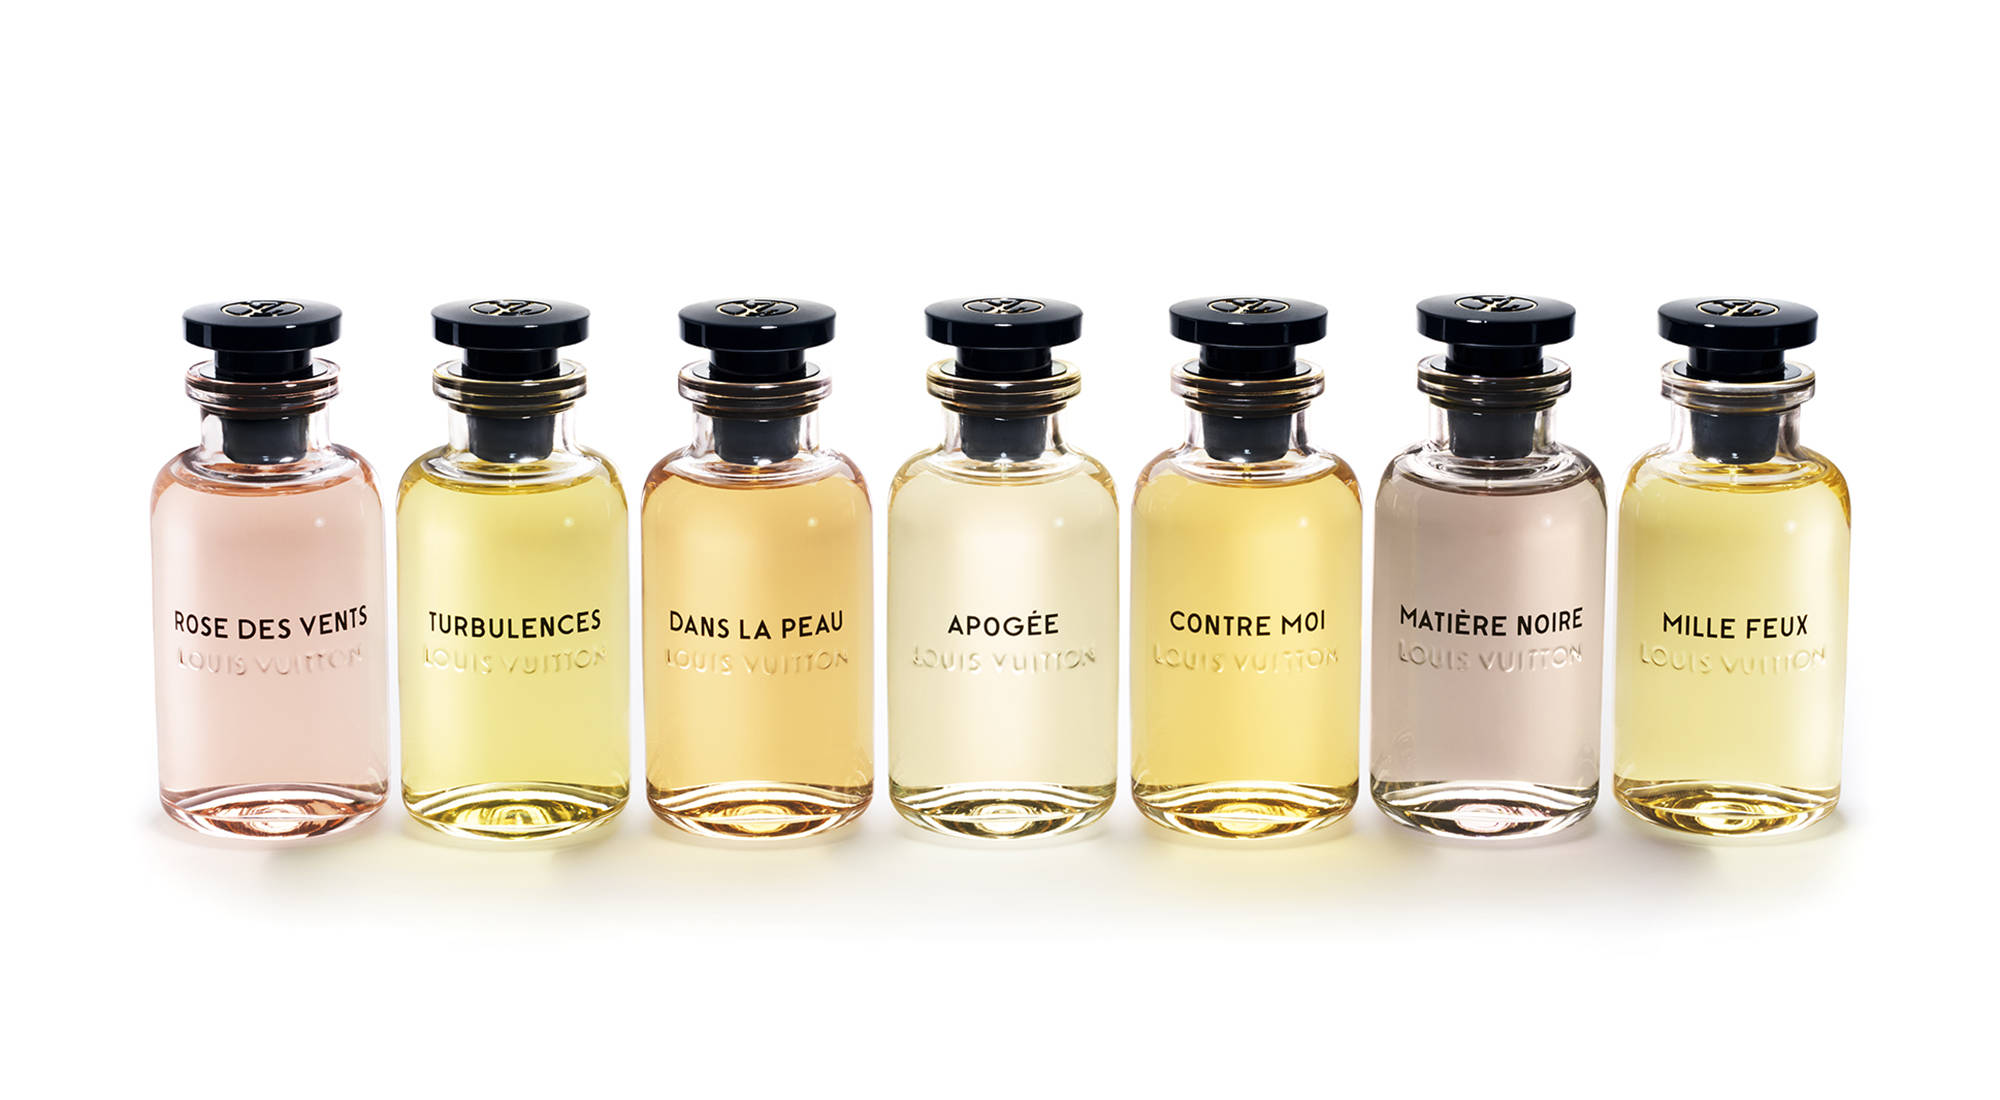 Louis Vuitton cho ra đời dòng sản phẩm nước hoa với 7 mùi hương lấy cảm hứng từ những chuyến du hành. 